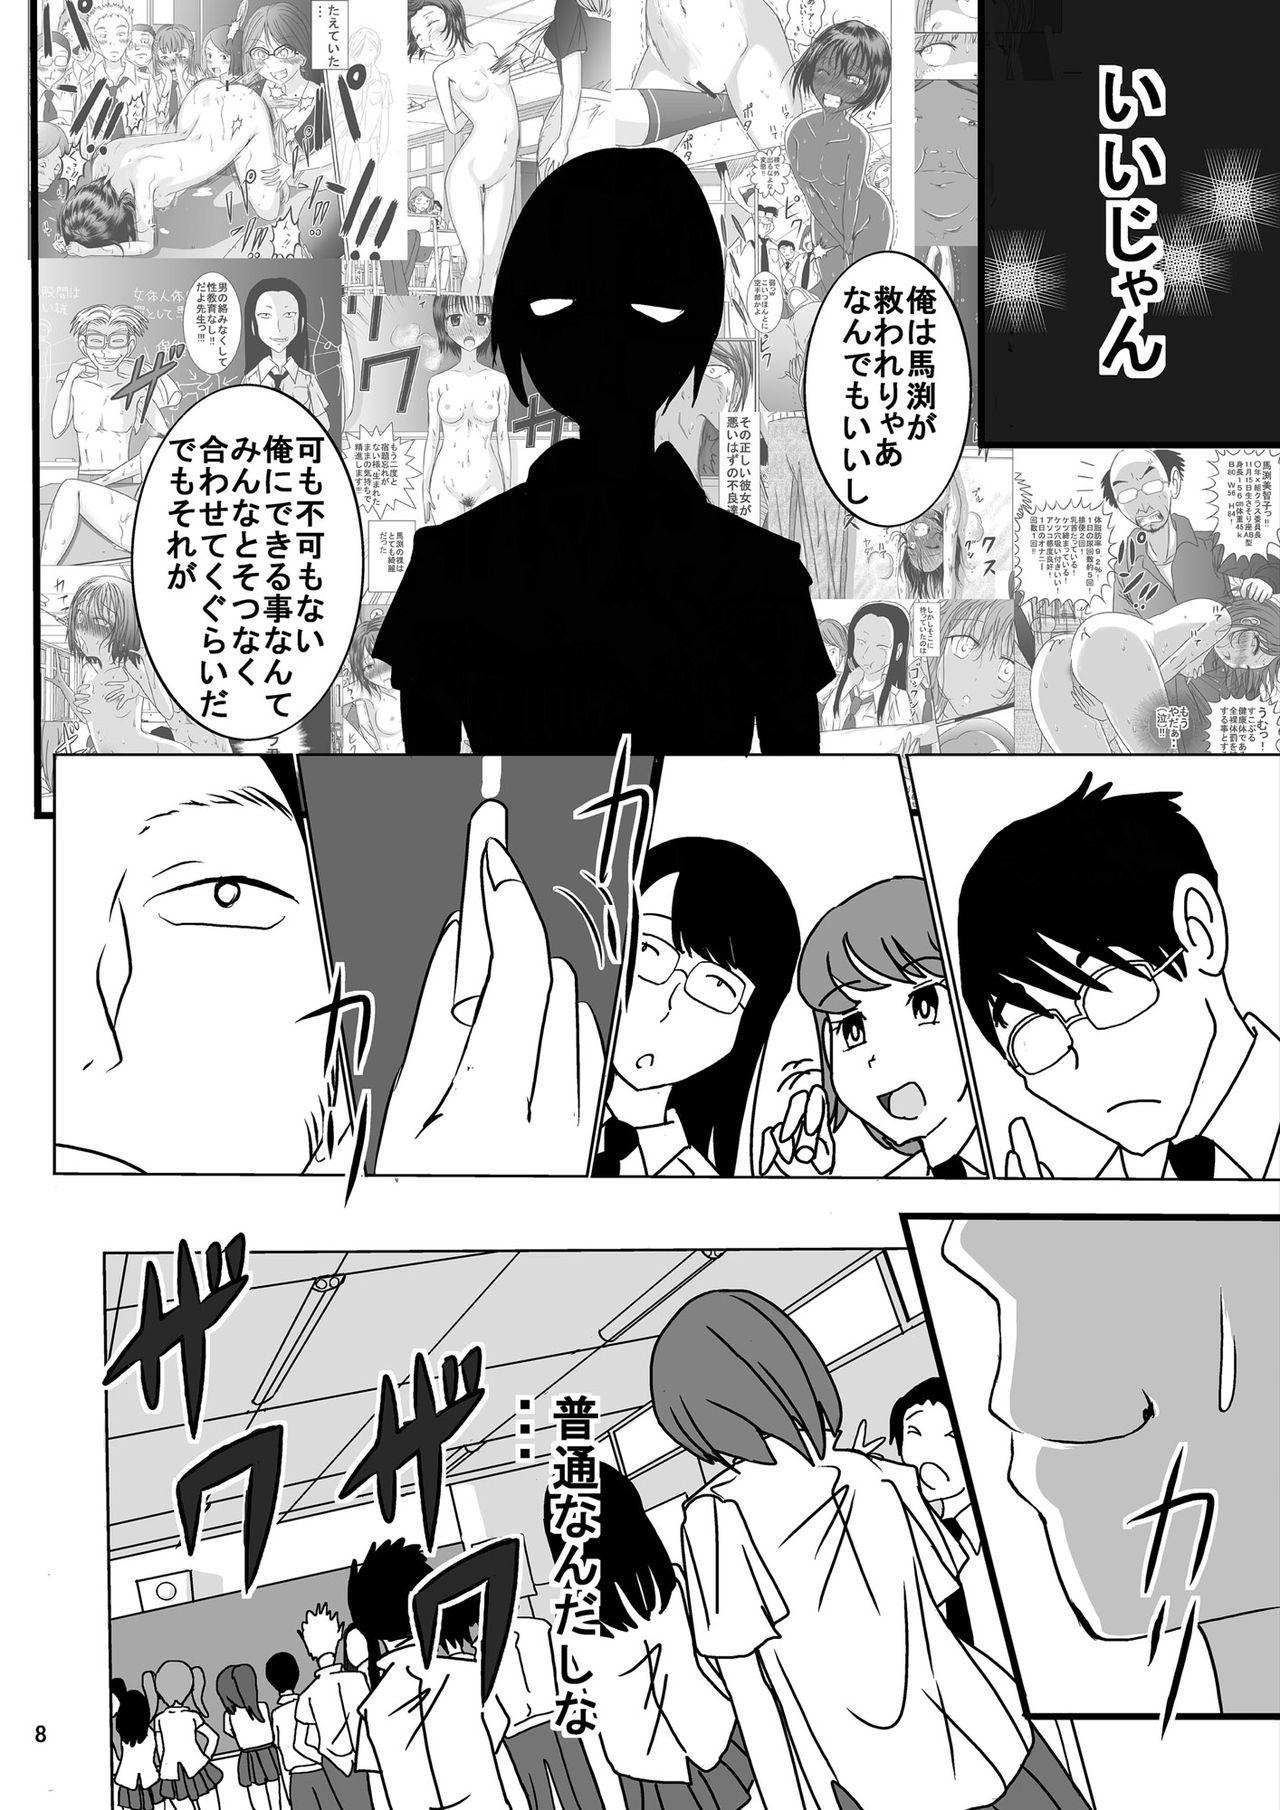 Teens Shukudai Wasuremashitako-san e no Zenra Kyouiku 6 Casada - Page 8